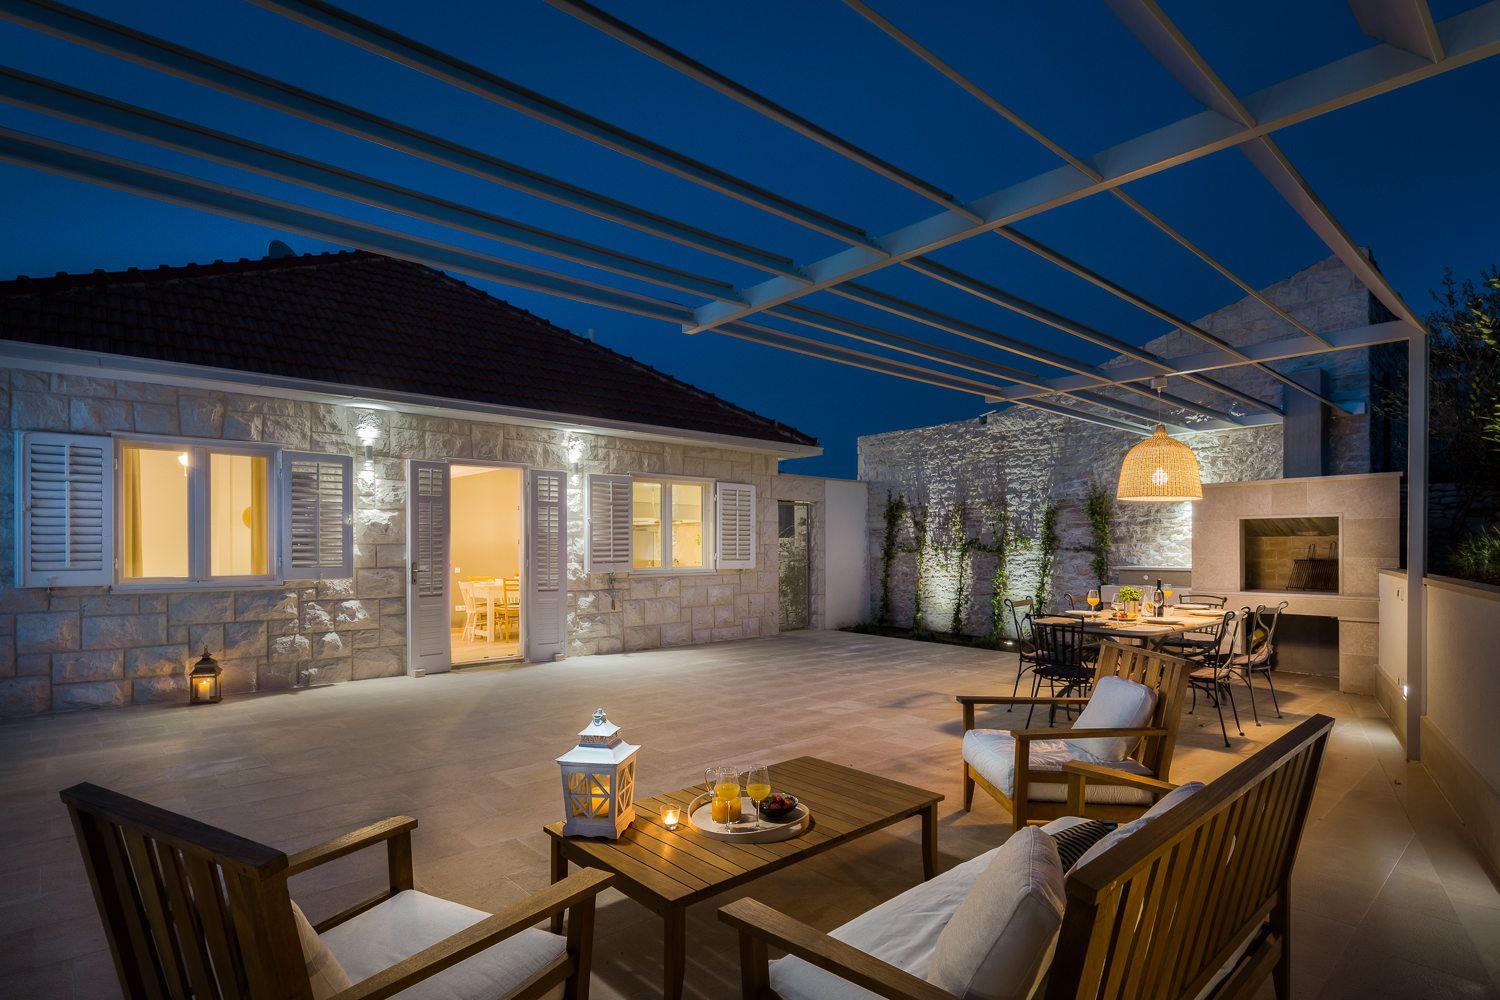 Ferienhaus mit Privatpool für 8 Personen ca.  Ferienhaus  kroatische Inseln